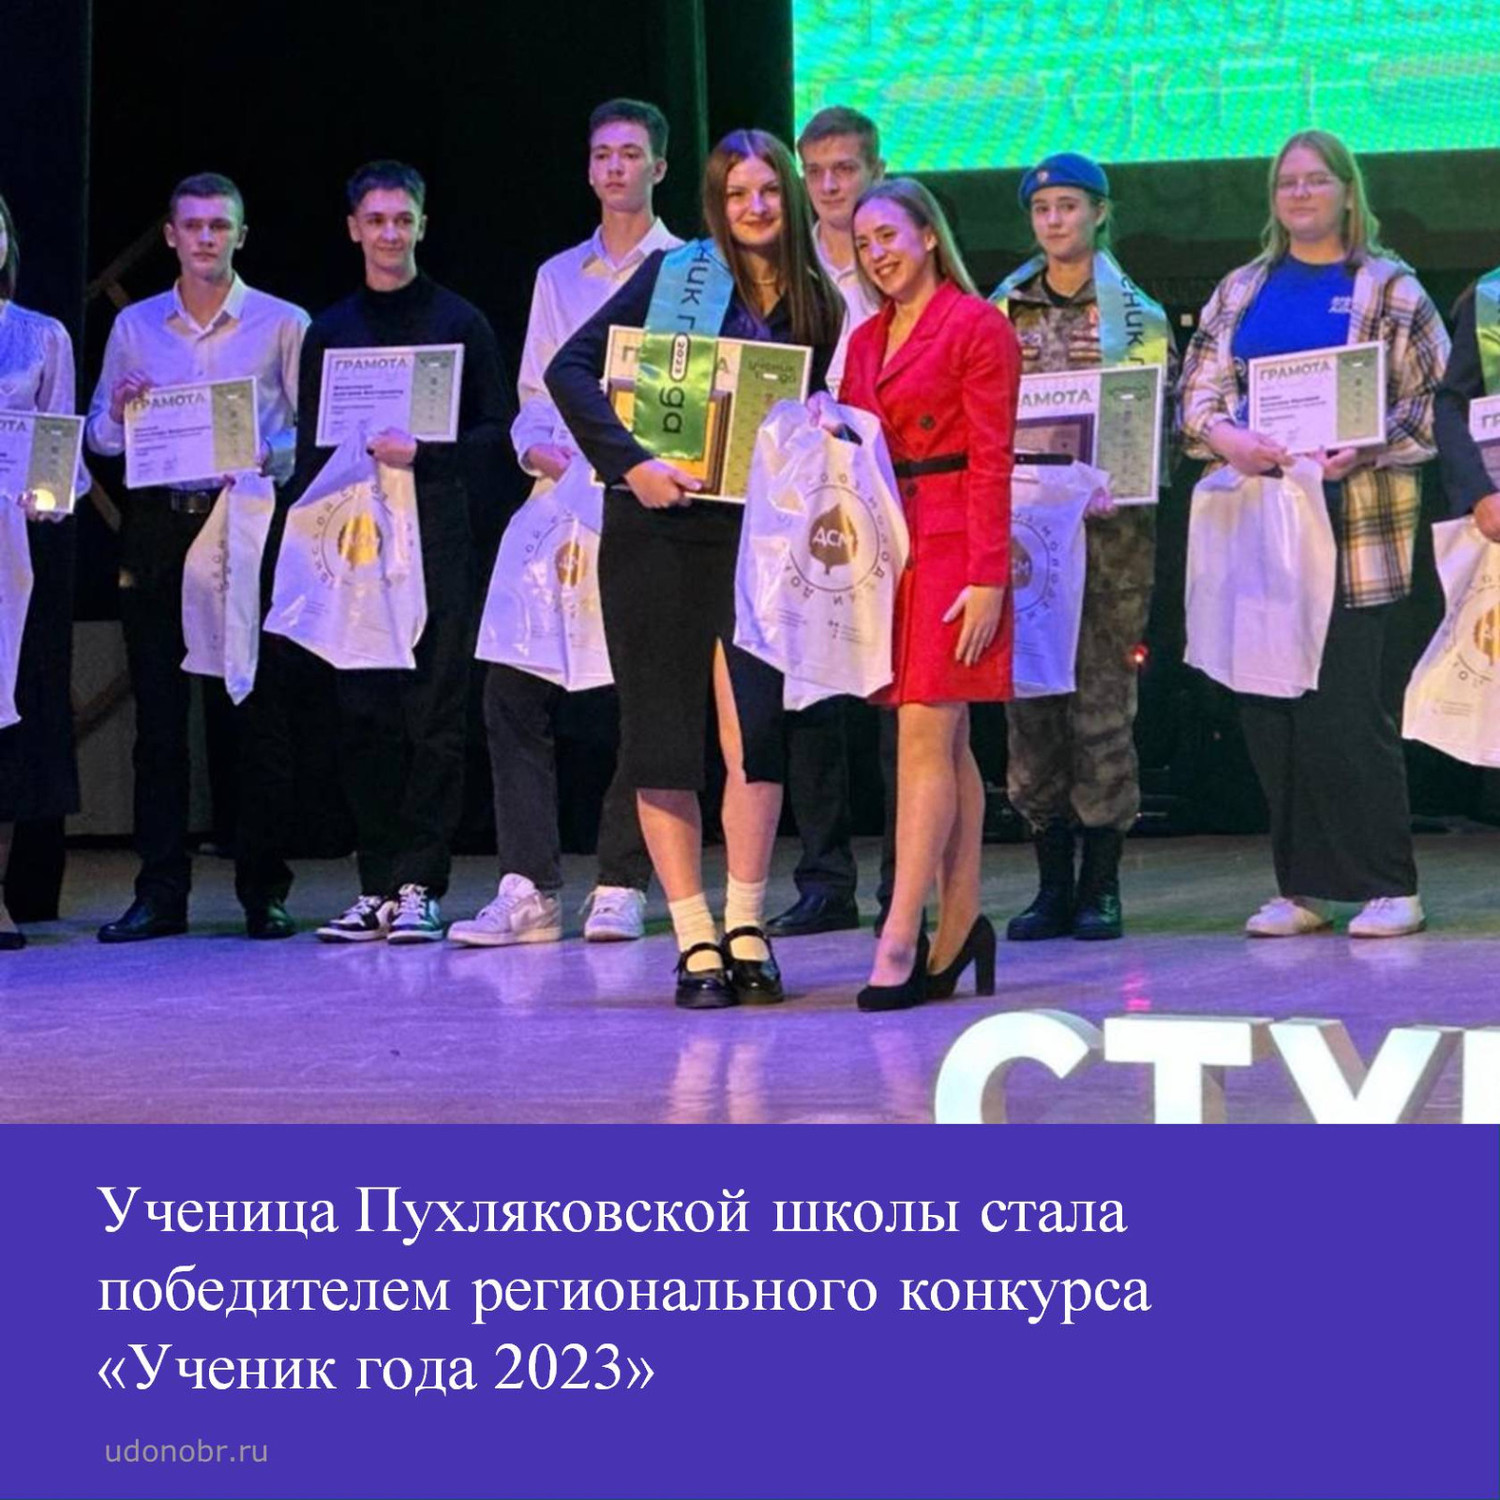 Ученица Пухляковской школы стала победителем регионального конкурса «Ученик года 2023»